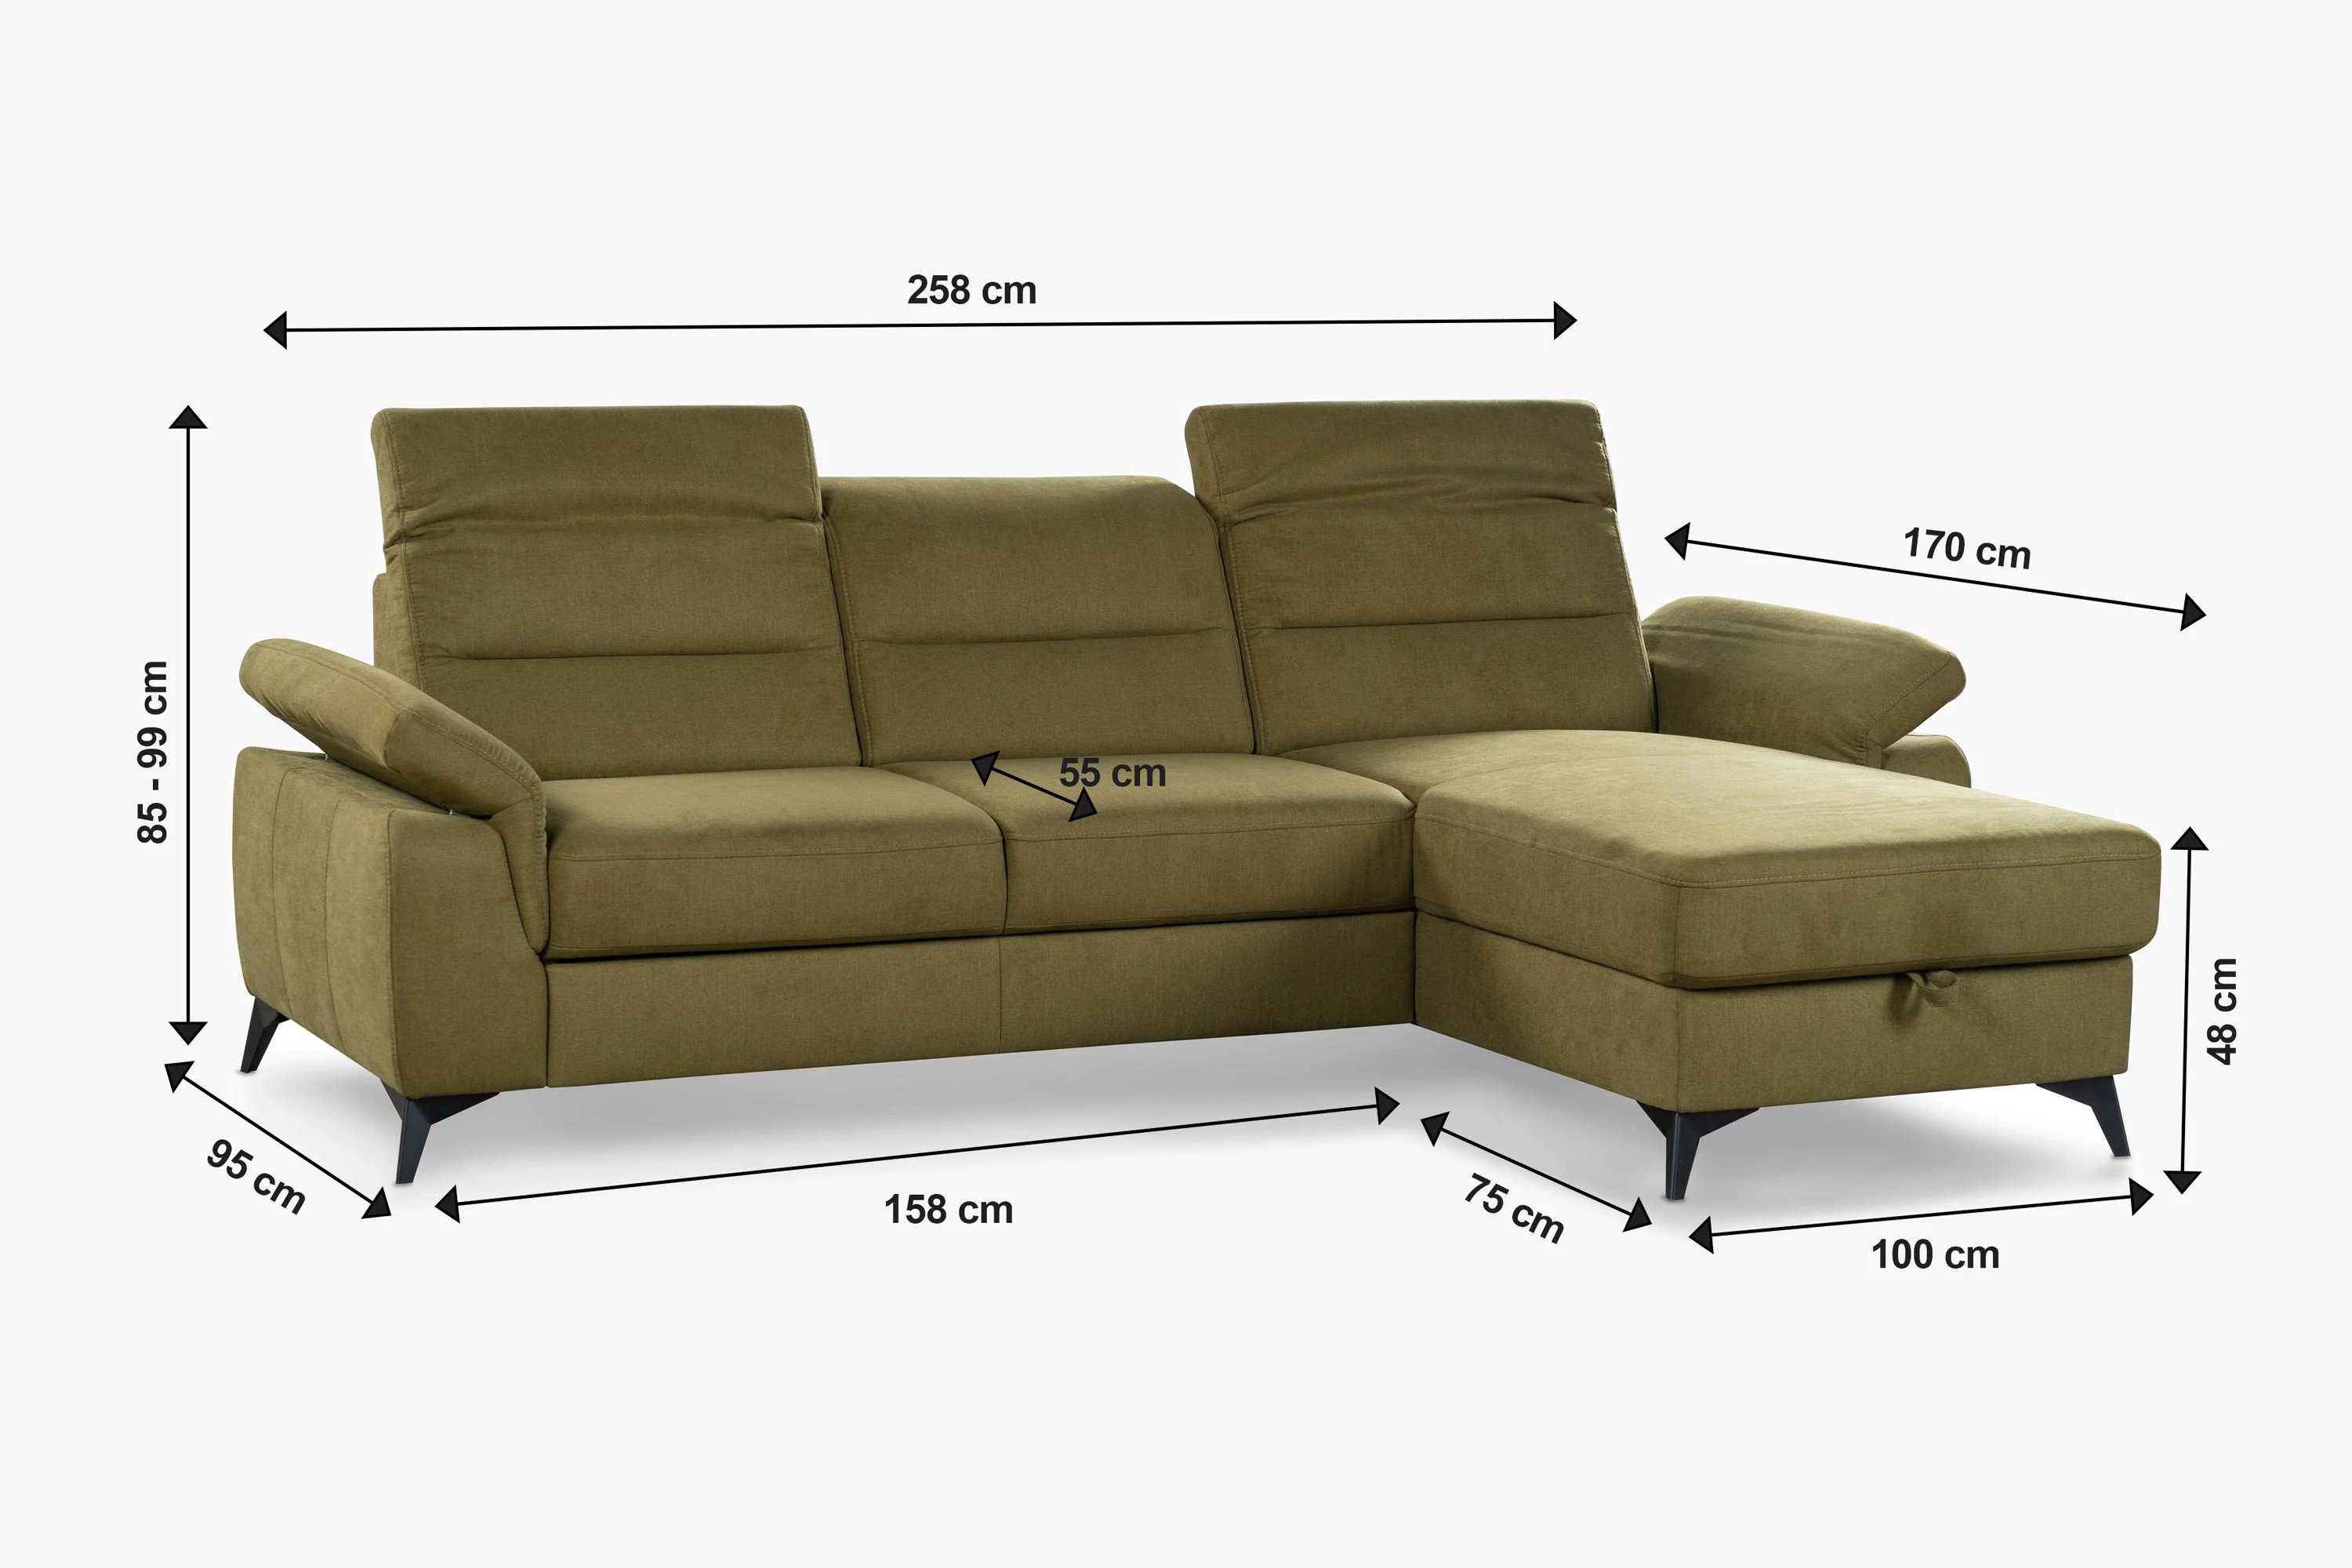 Moderná obývacia izba sa nezaobíde bez kvalitnej pohodlnej sedačky.